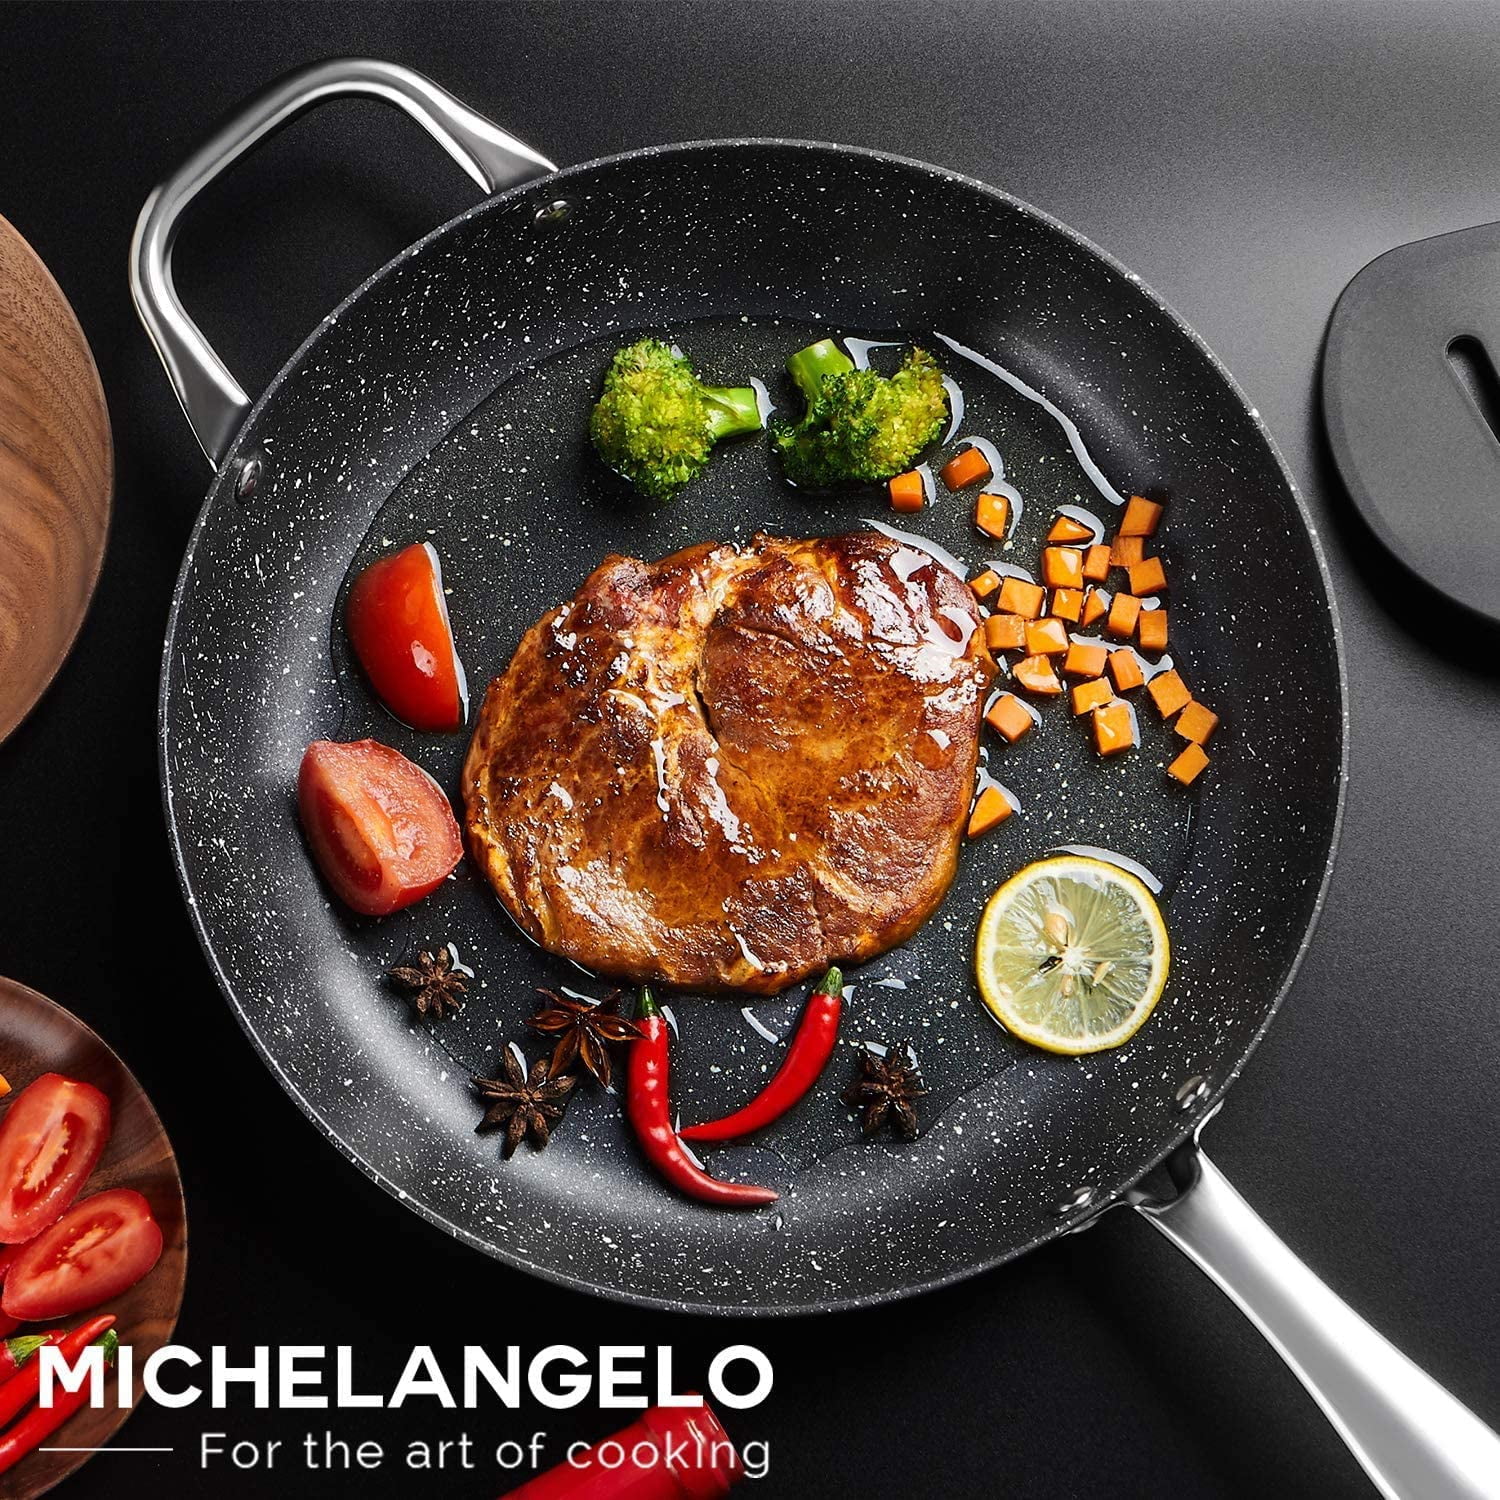 Michelangelo Cookware